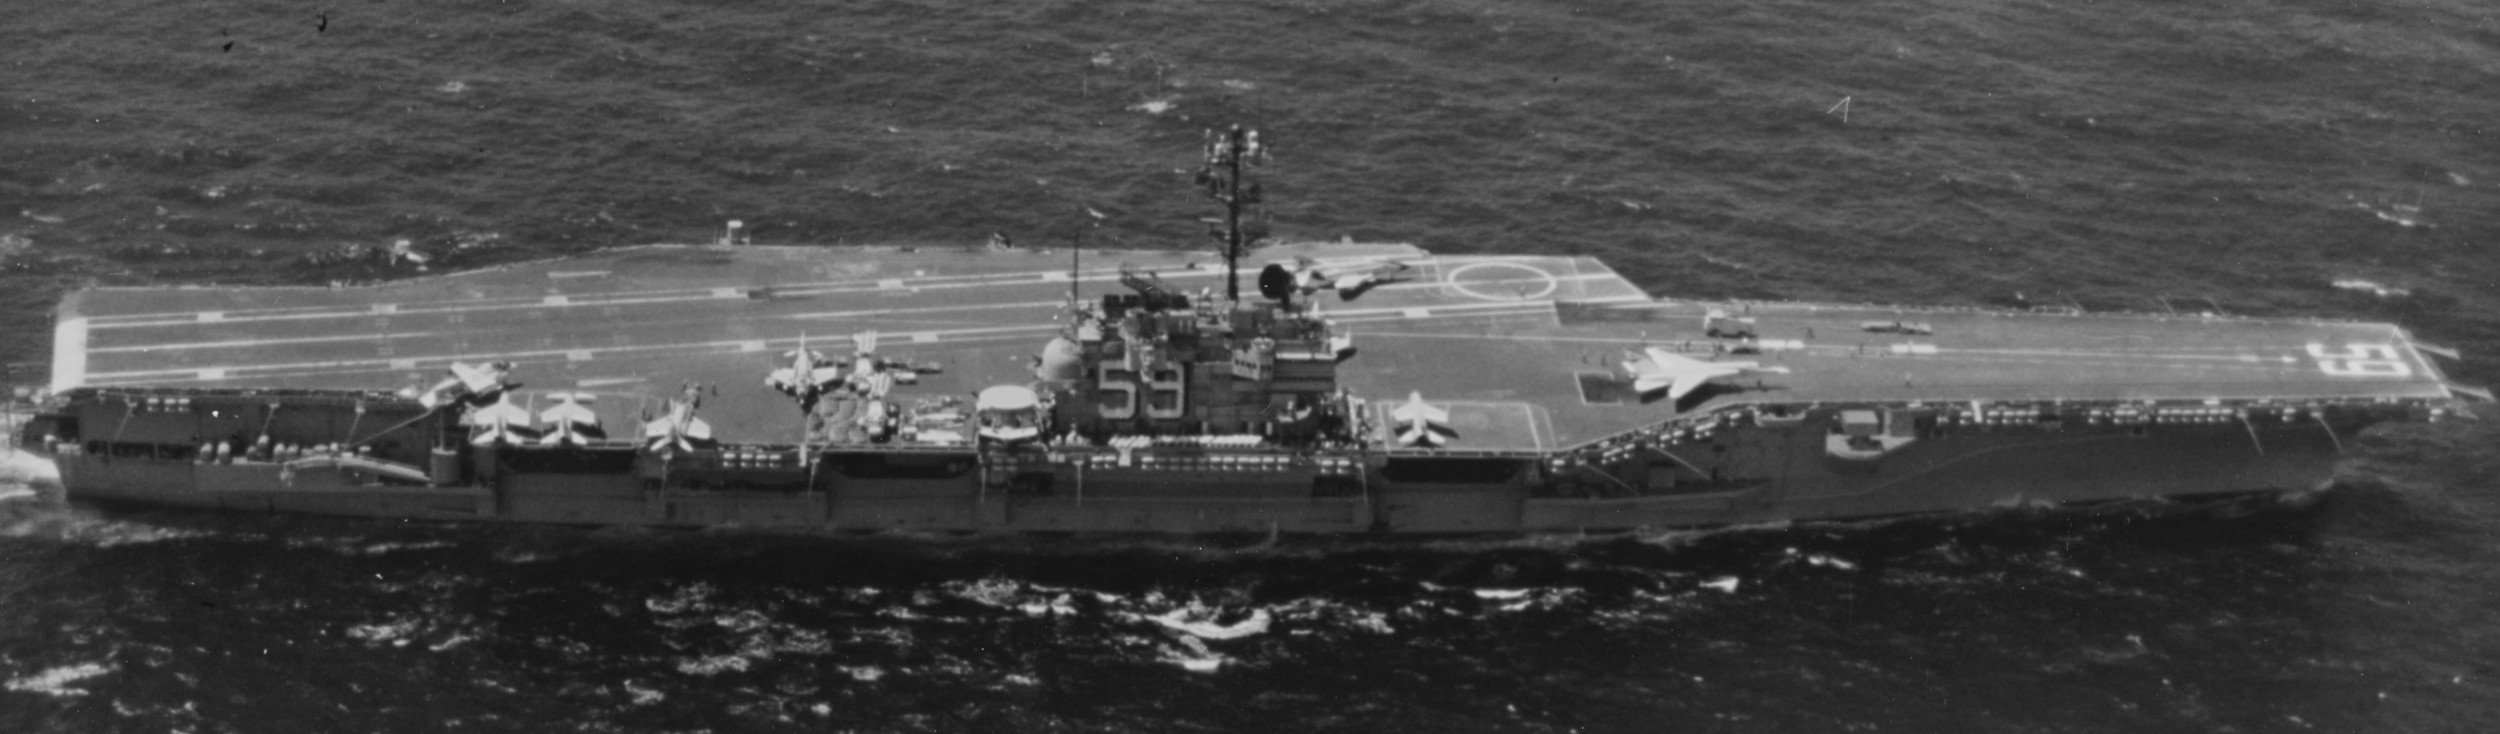 cv-59 uss forrestal aircraft carrier air wing cvw-17 us navy 38